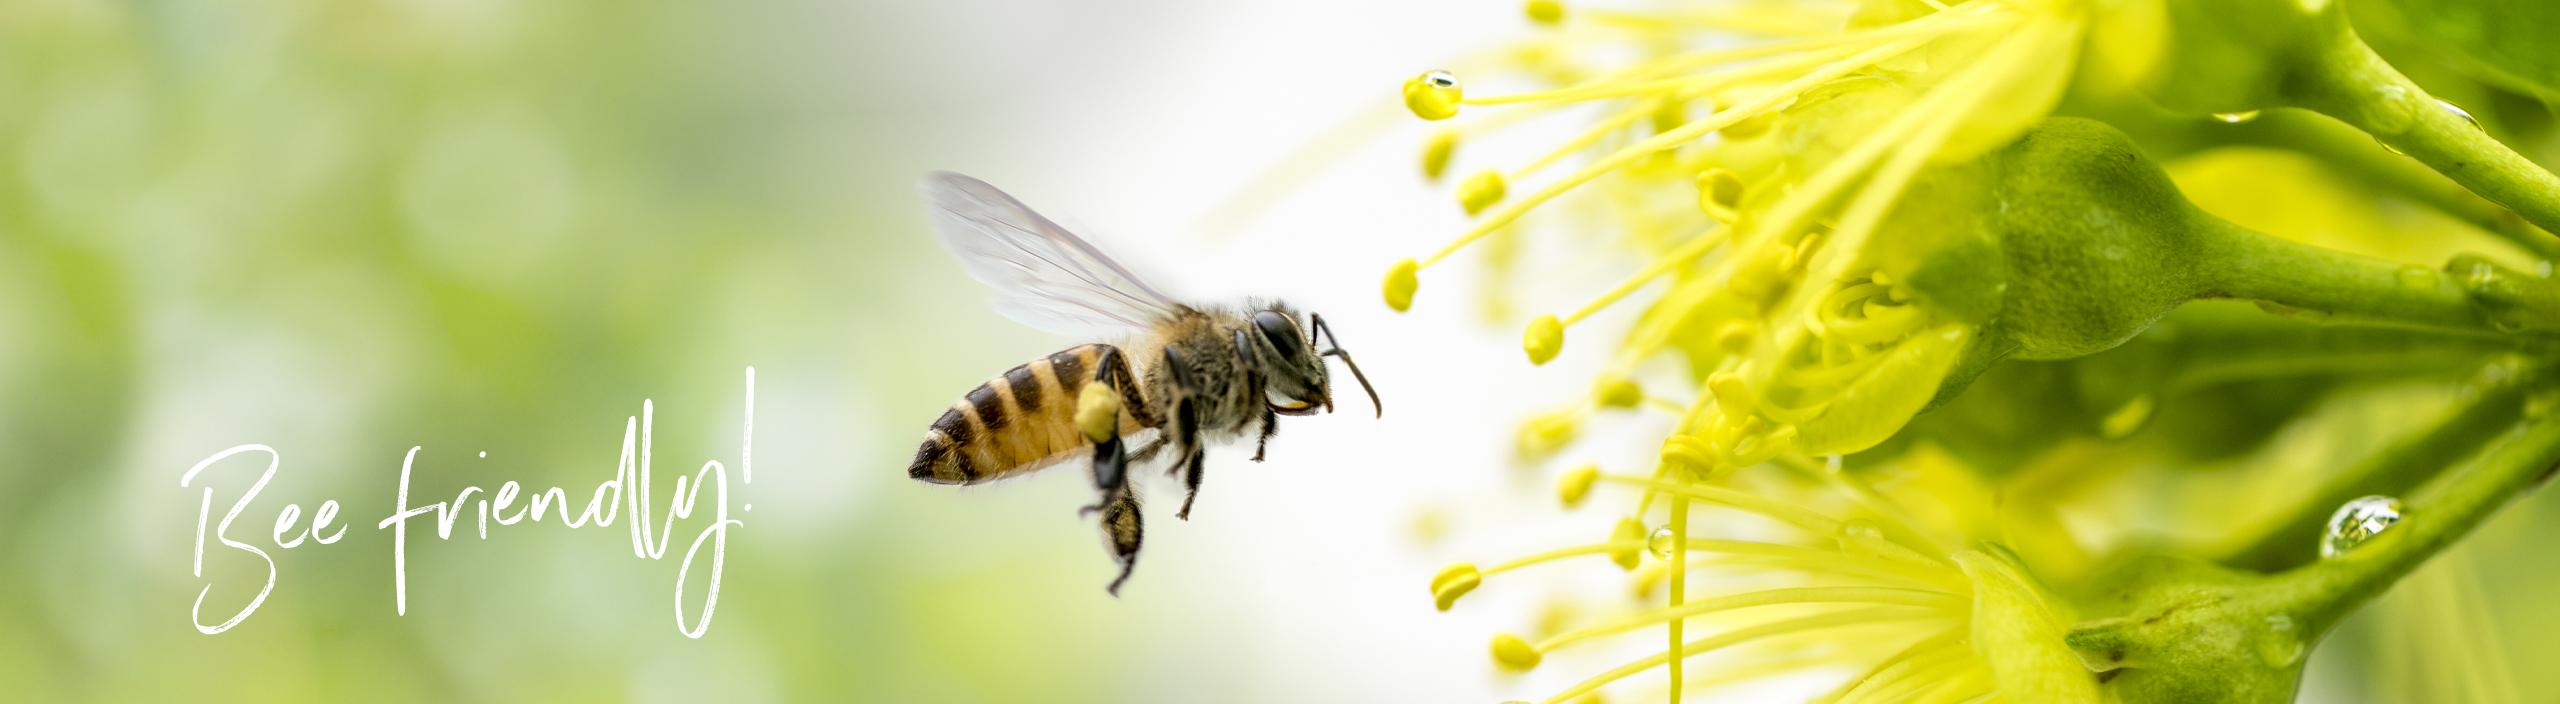 L'ape vola verso un fiore